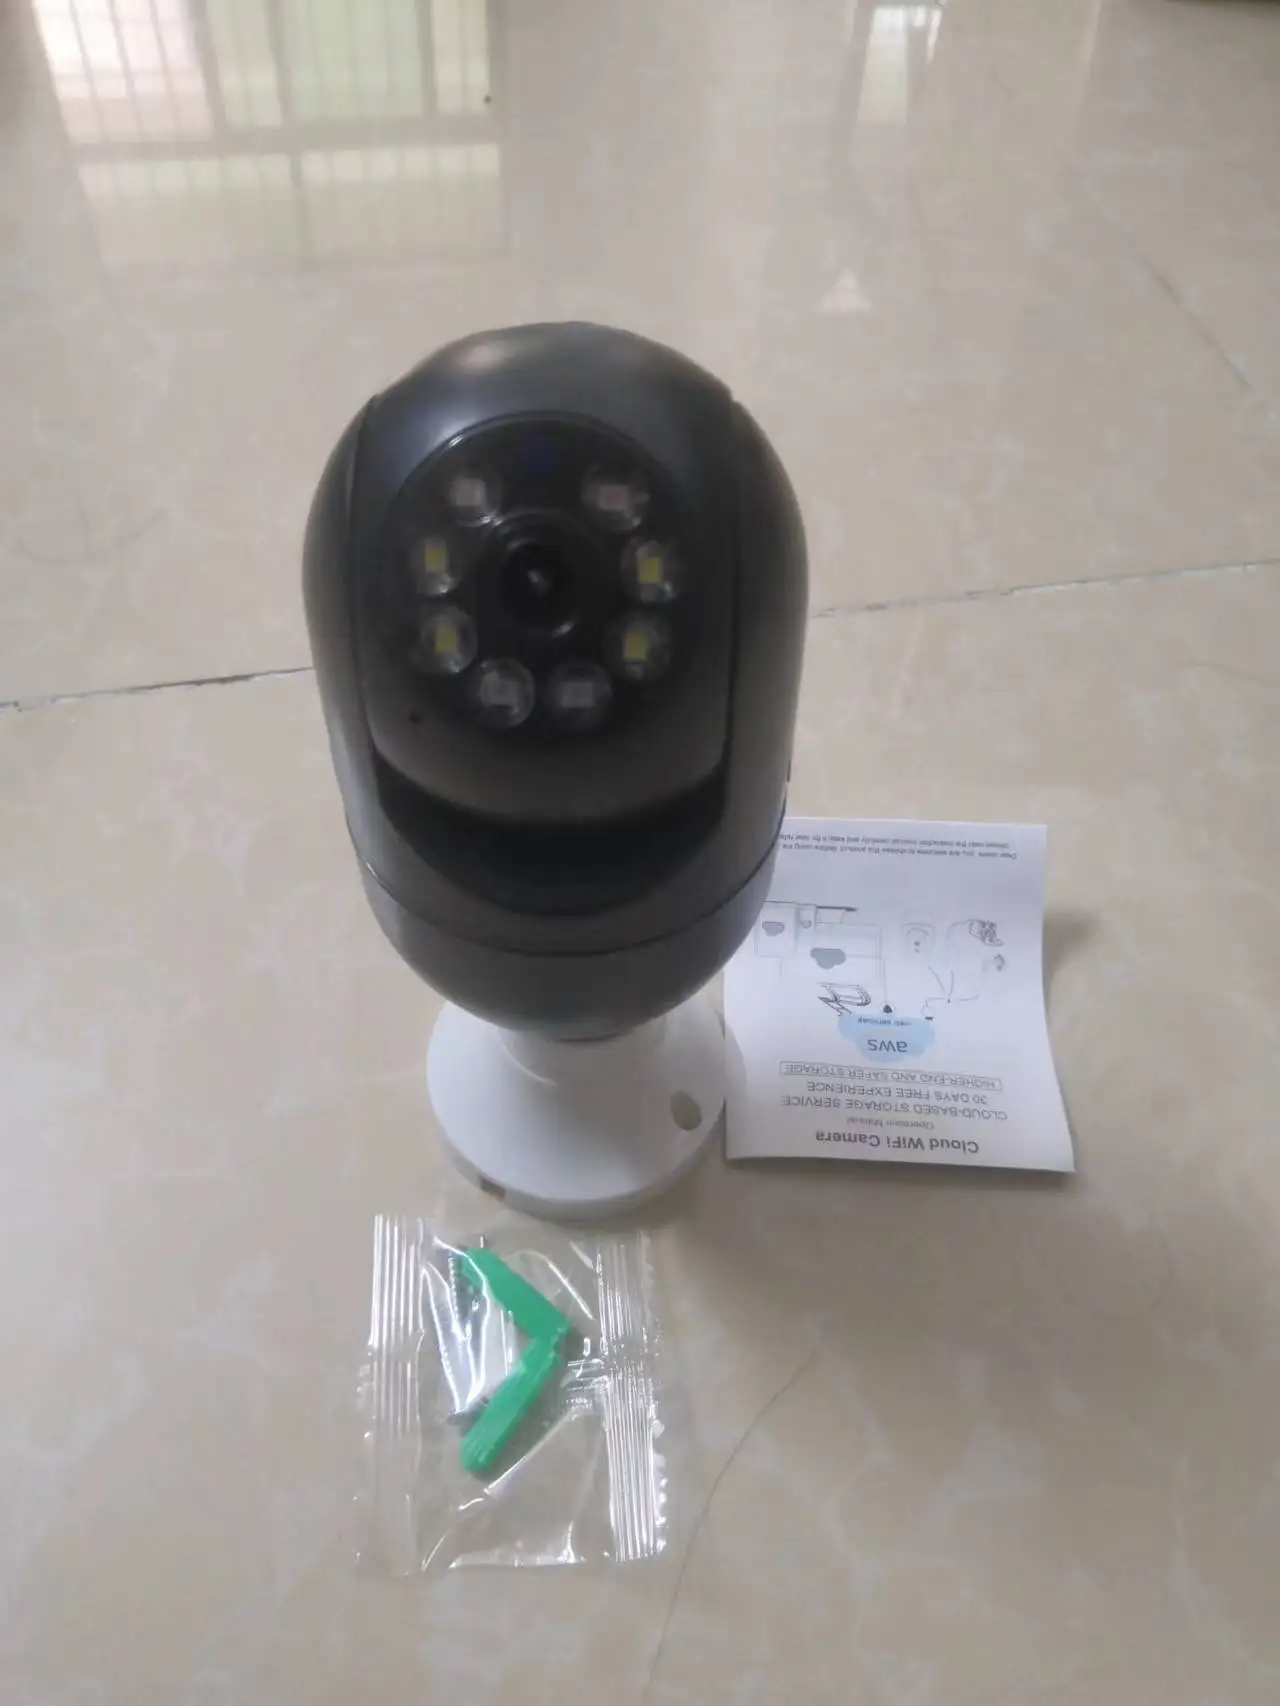 GuardCam Light Bulb Camera